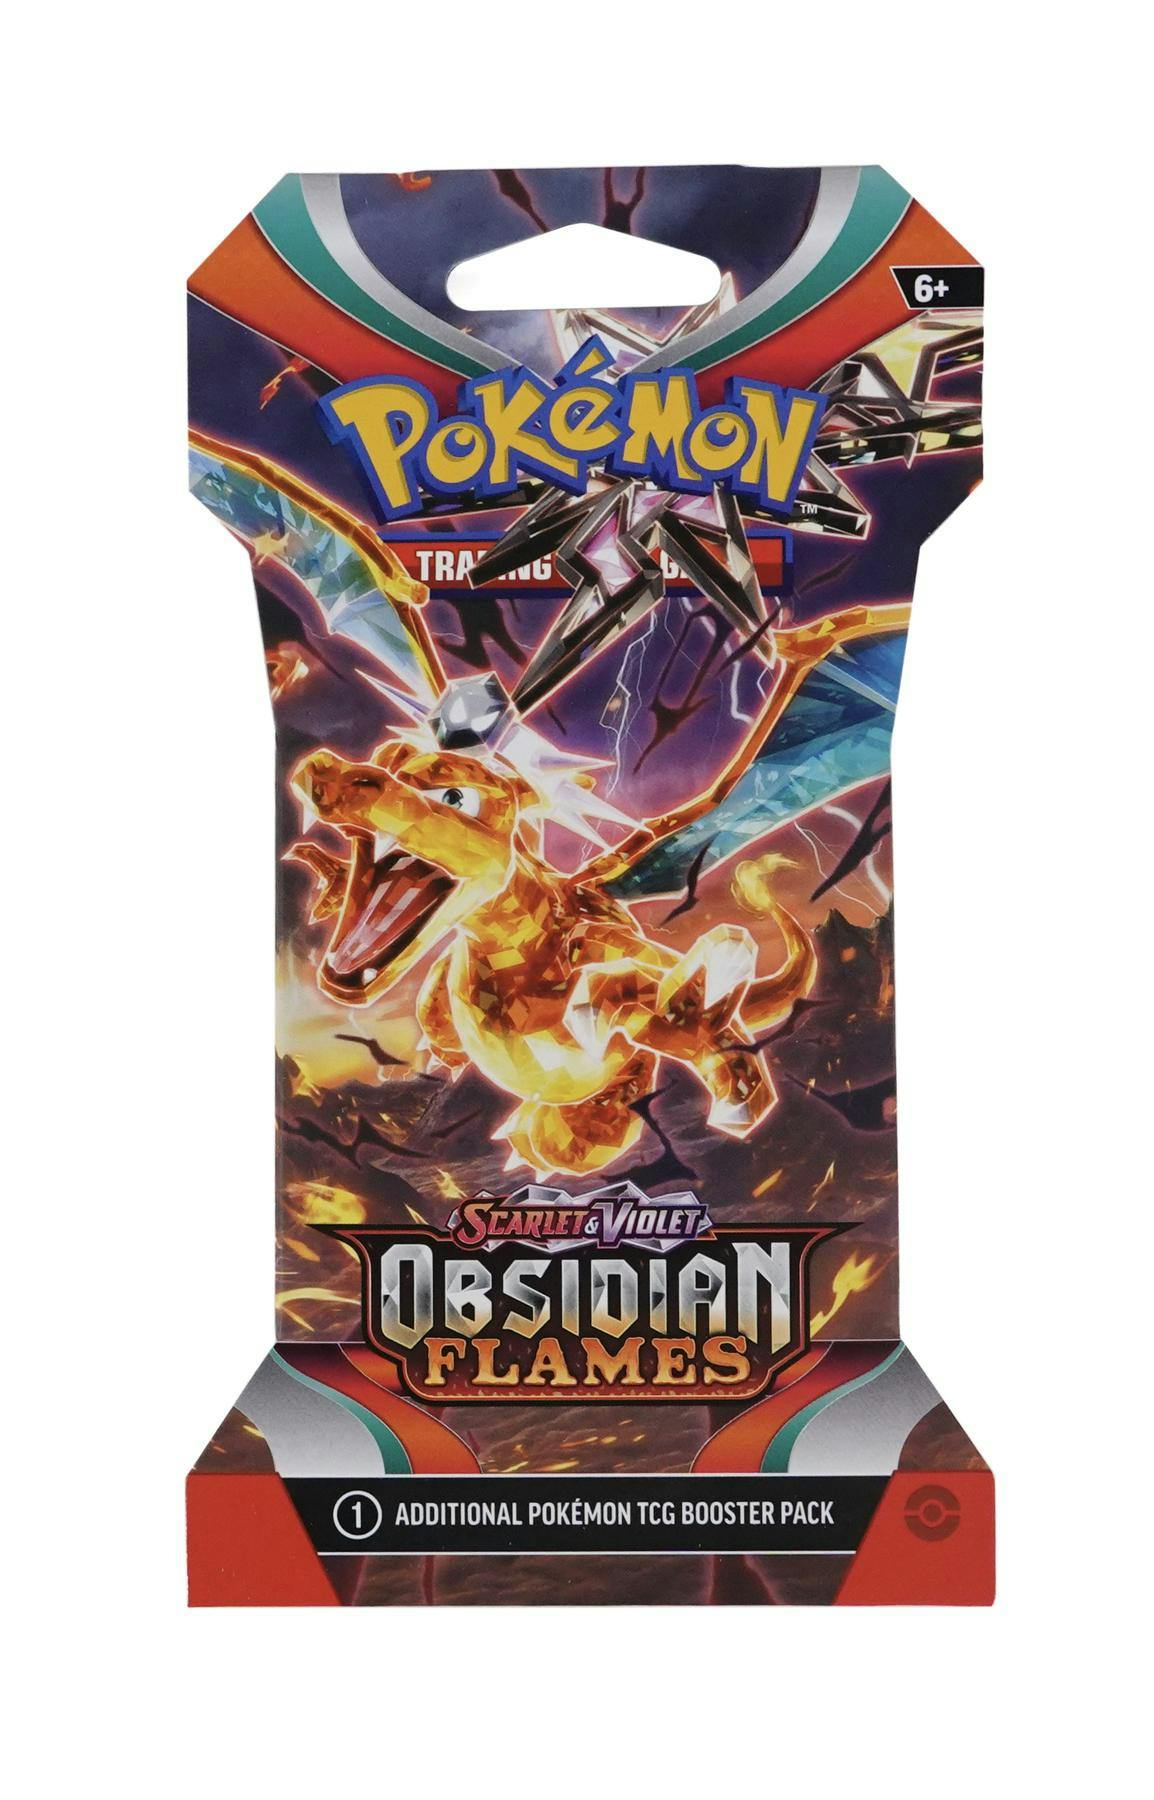 Pokémon Scarlet and Violet Obsidian Flames Booster